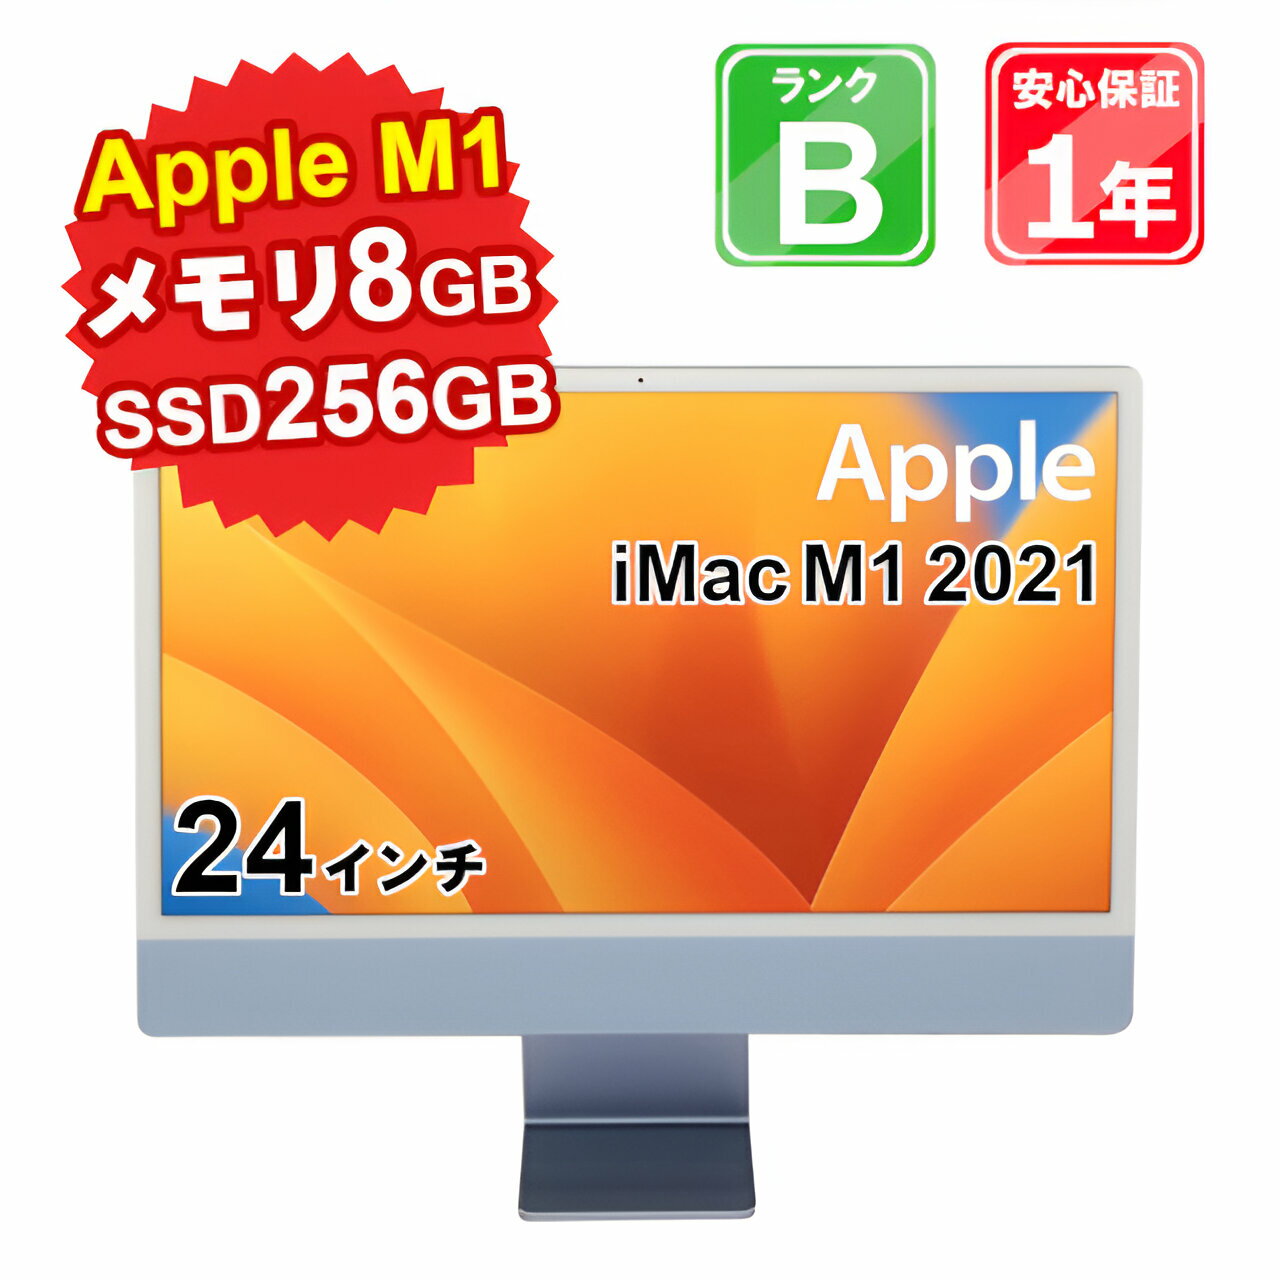 【中古】 中古 パソコン デスクトップパソコン Apple iMac M1 2021 MGPK3J/A Apple M1 メモリ8GB SSD256GB 24インチ MacOS Ventura WebCamera有 1年保証【ヤマダ ホールディングスグループ】